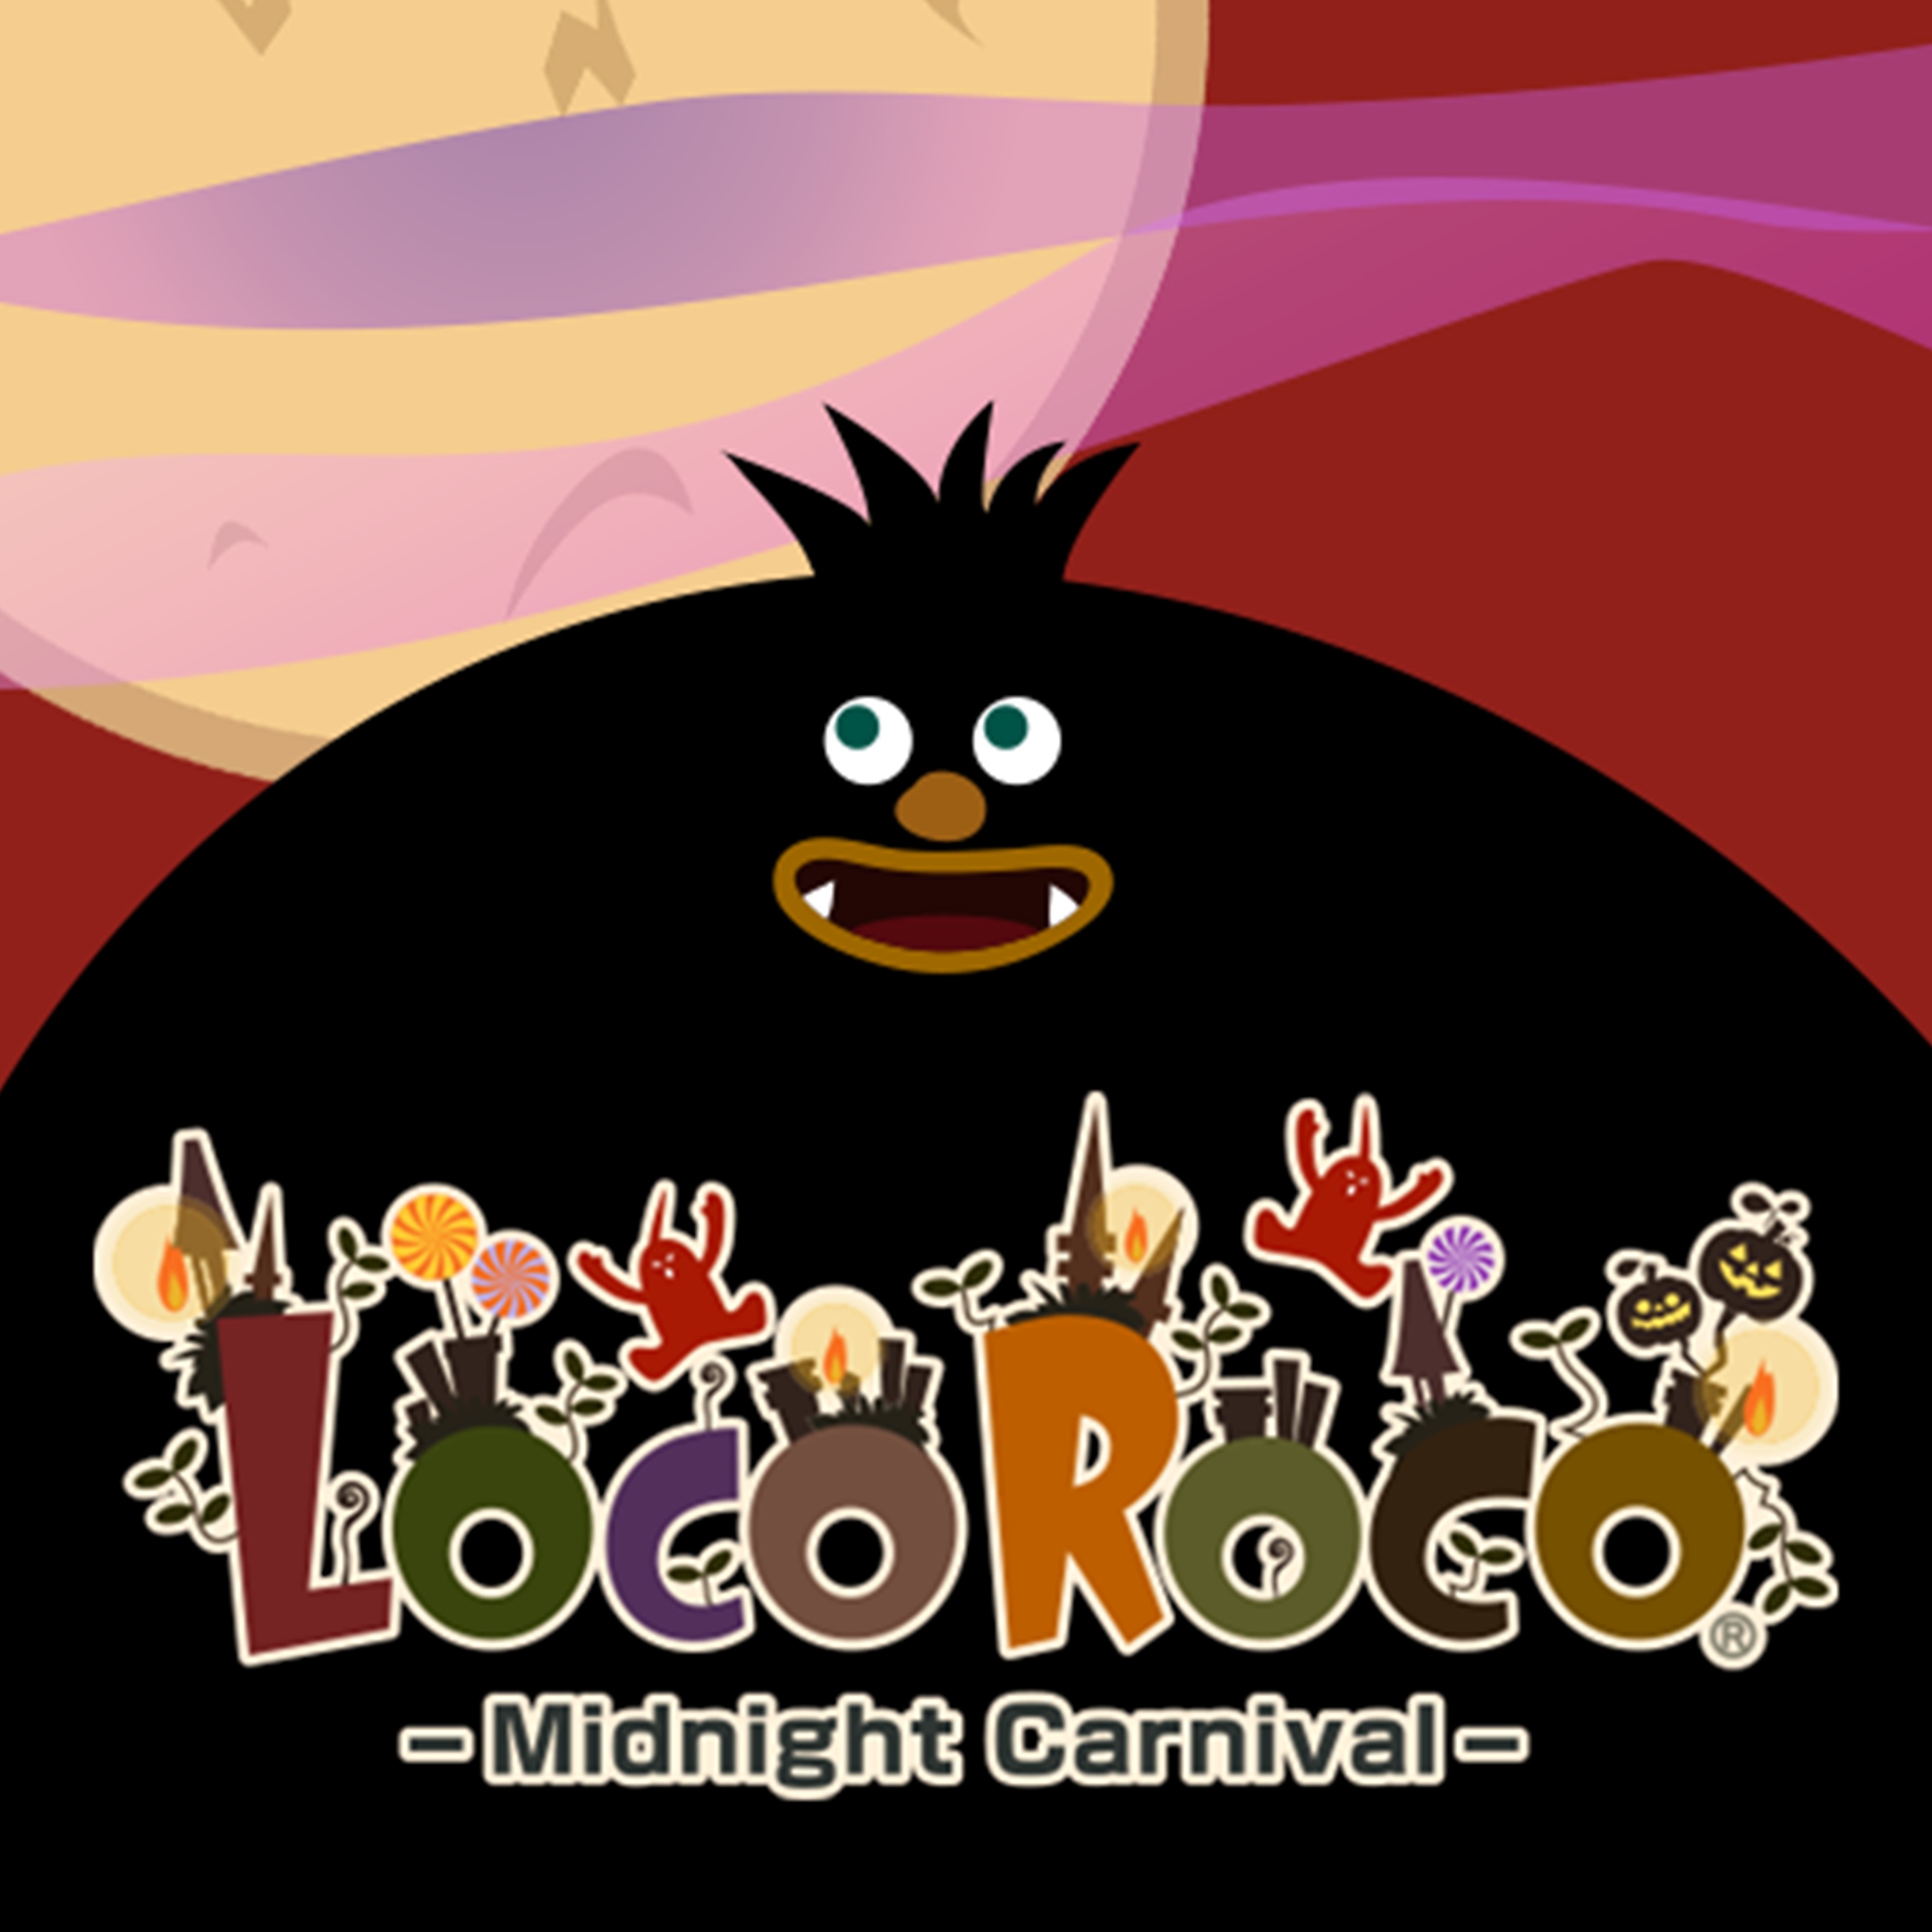 LocoRoco Midnight-kermisafbeelding van een groot zwart tekenfilmfiguur